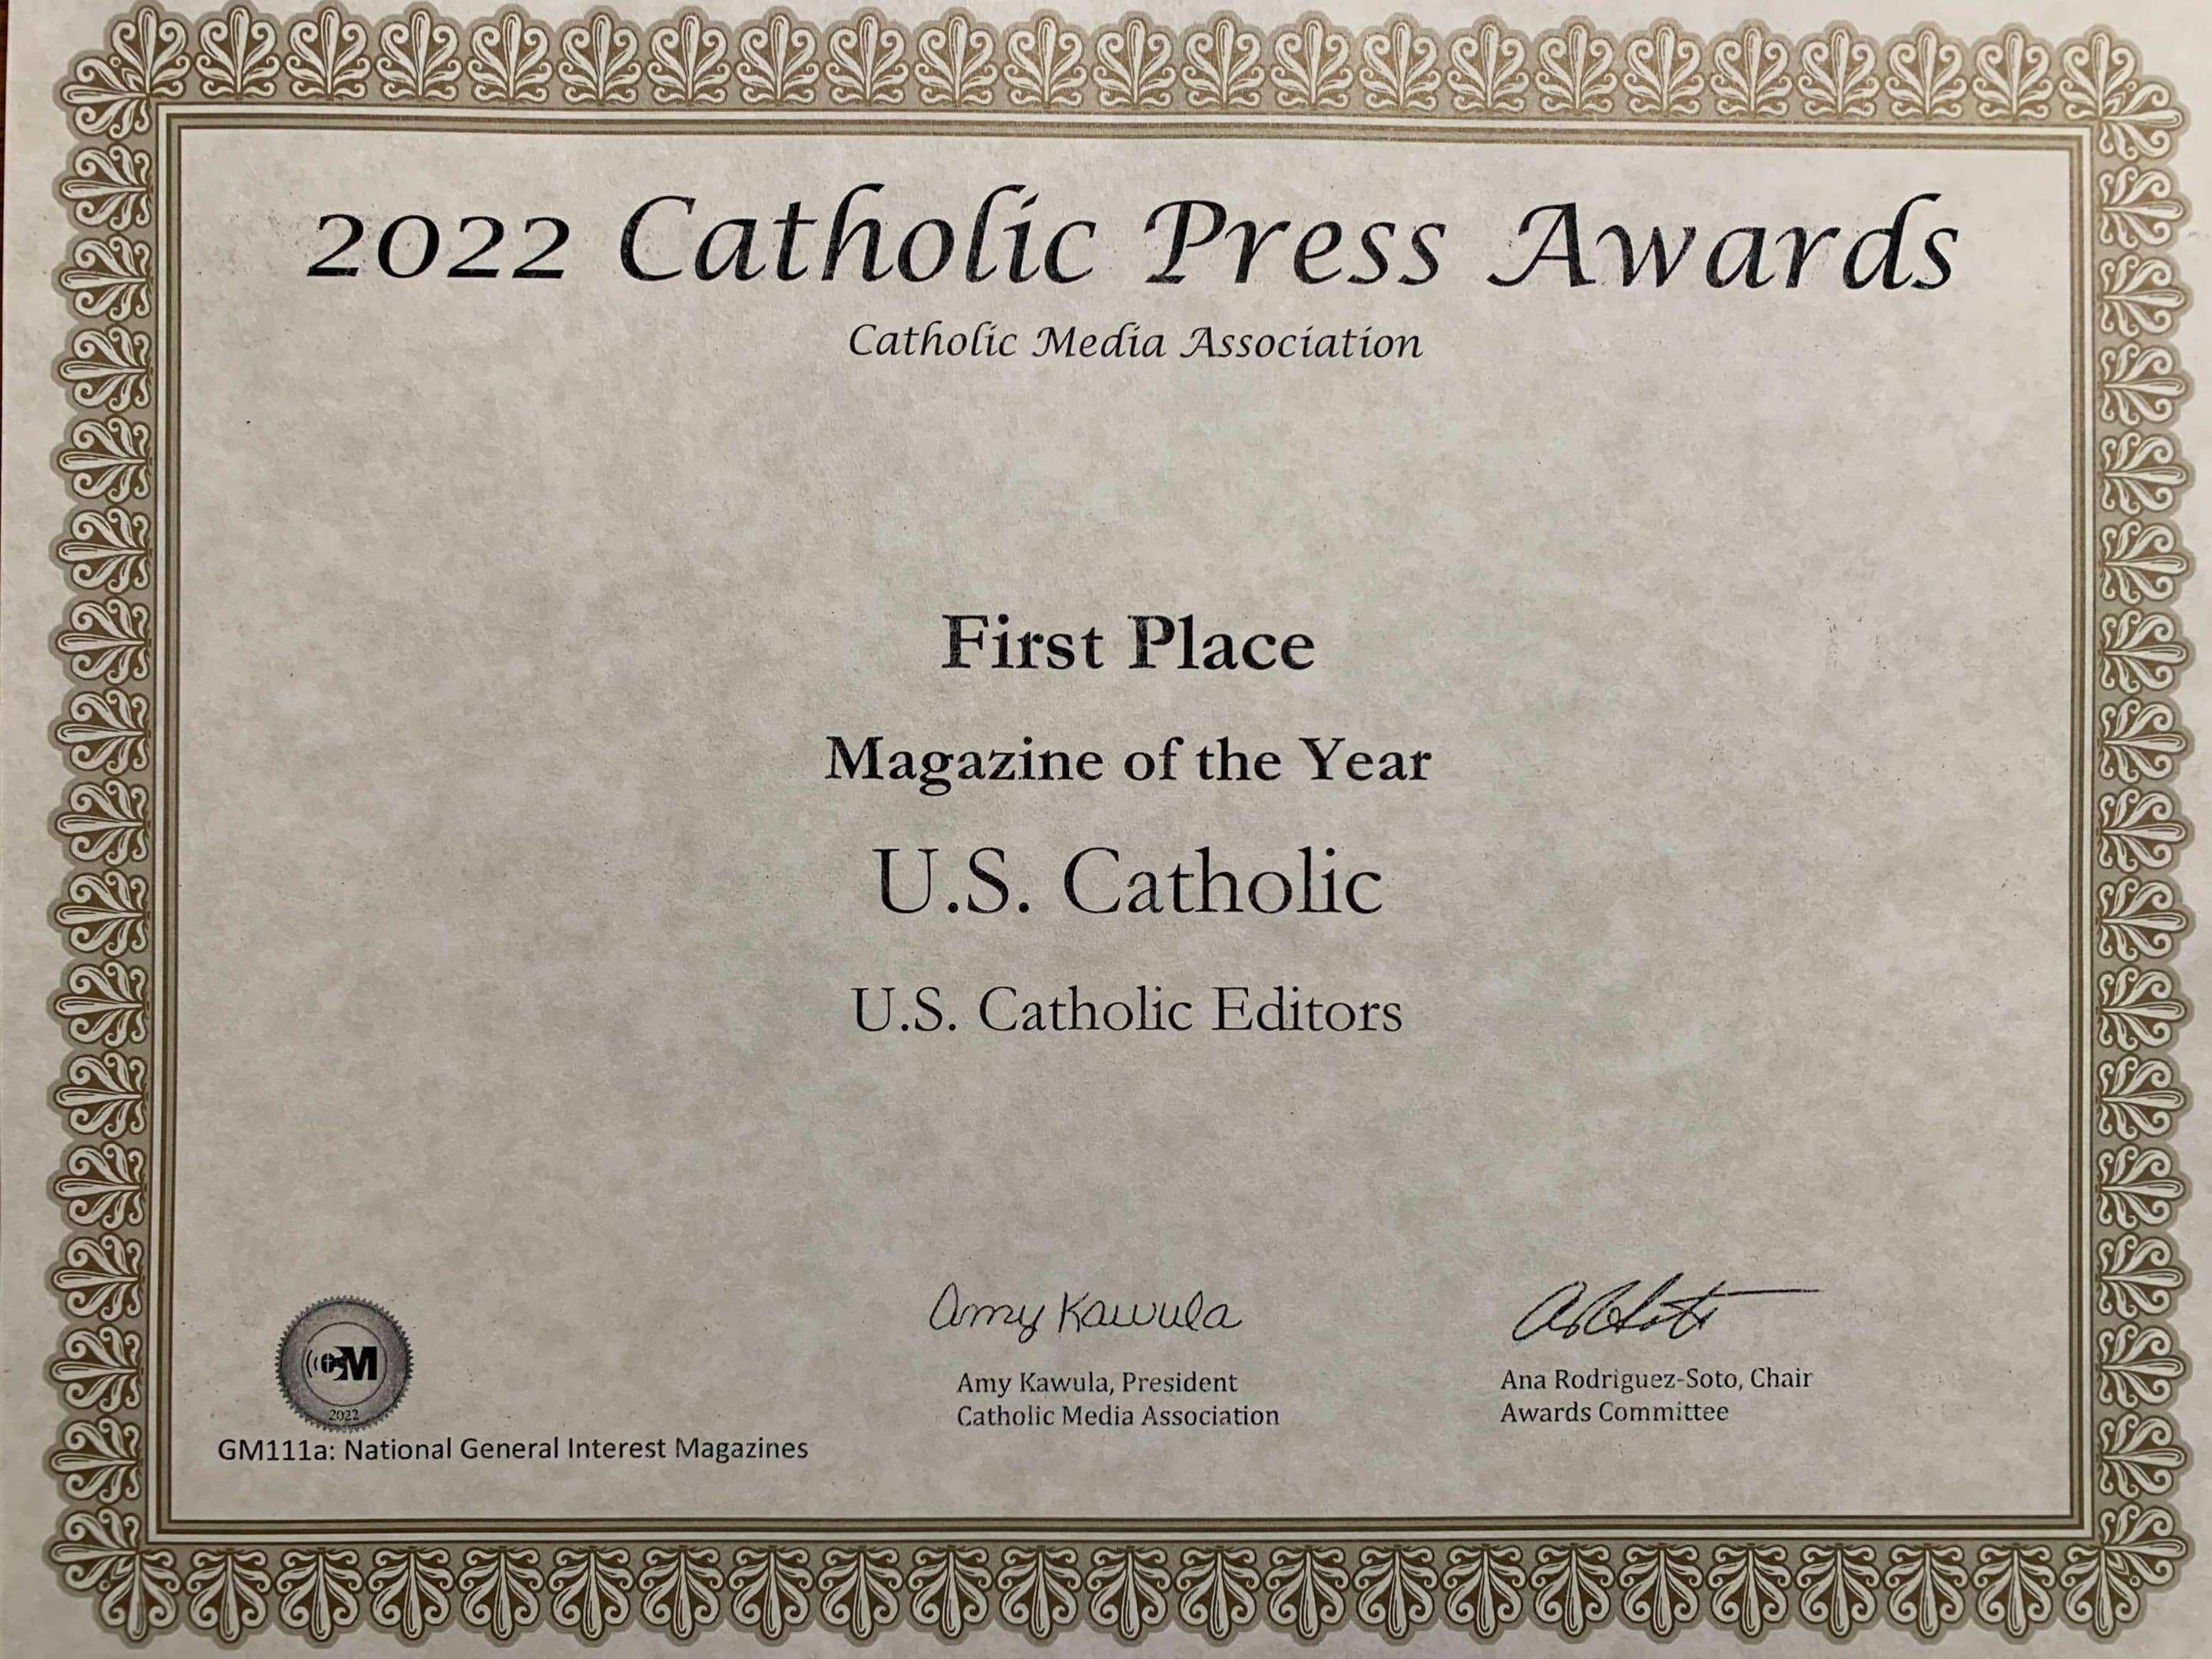 U.S. Catholic named “Magazine of the Year” for 2022